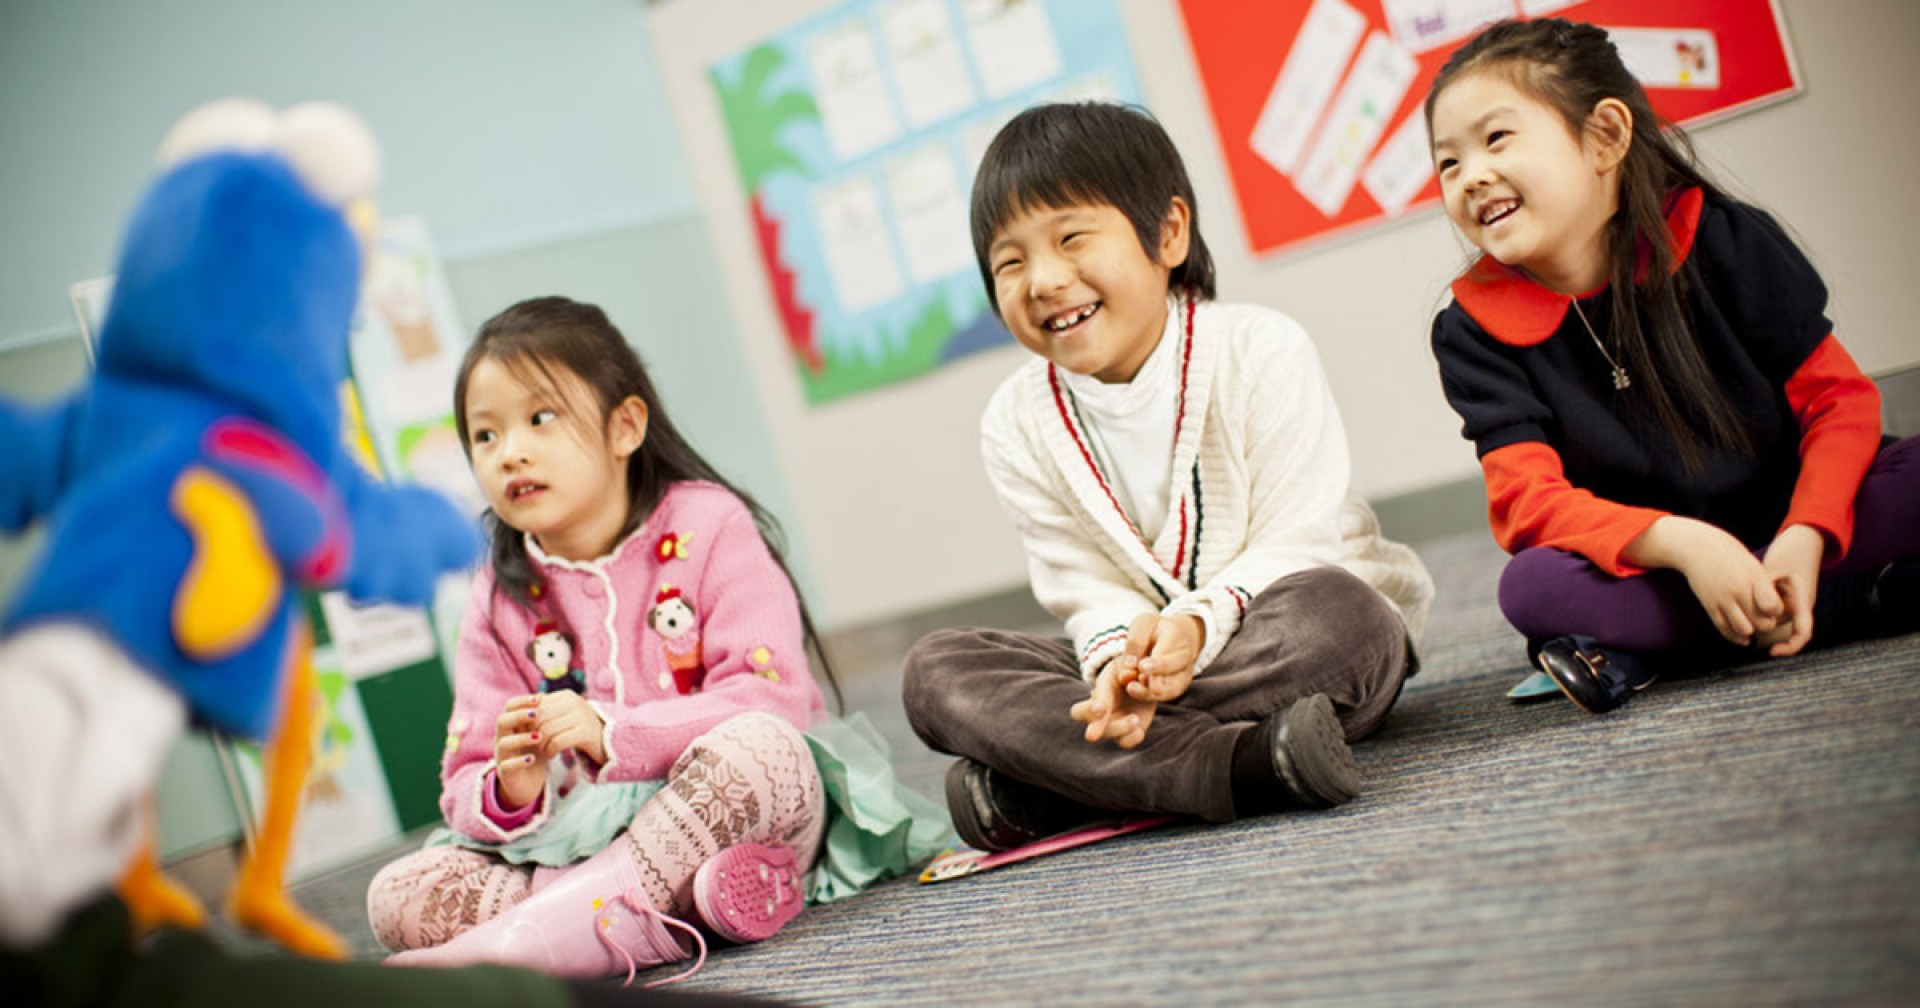 30 phút học tiếng Anh cho trẻ 4 tuổi: Giới thiệu số, màu sắc và chữ cái ABC